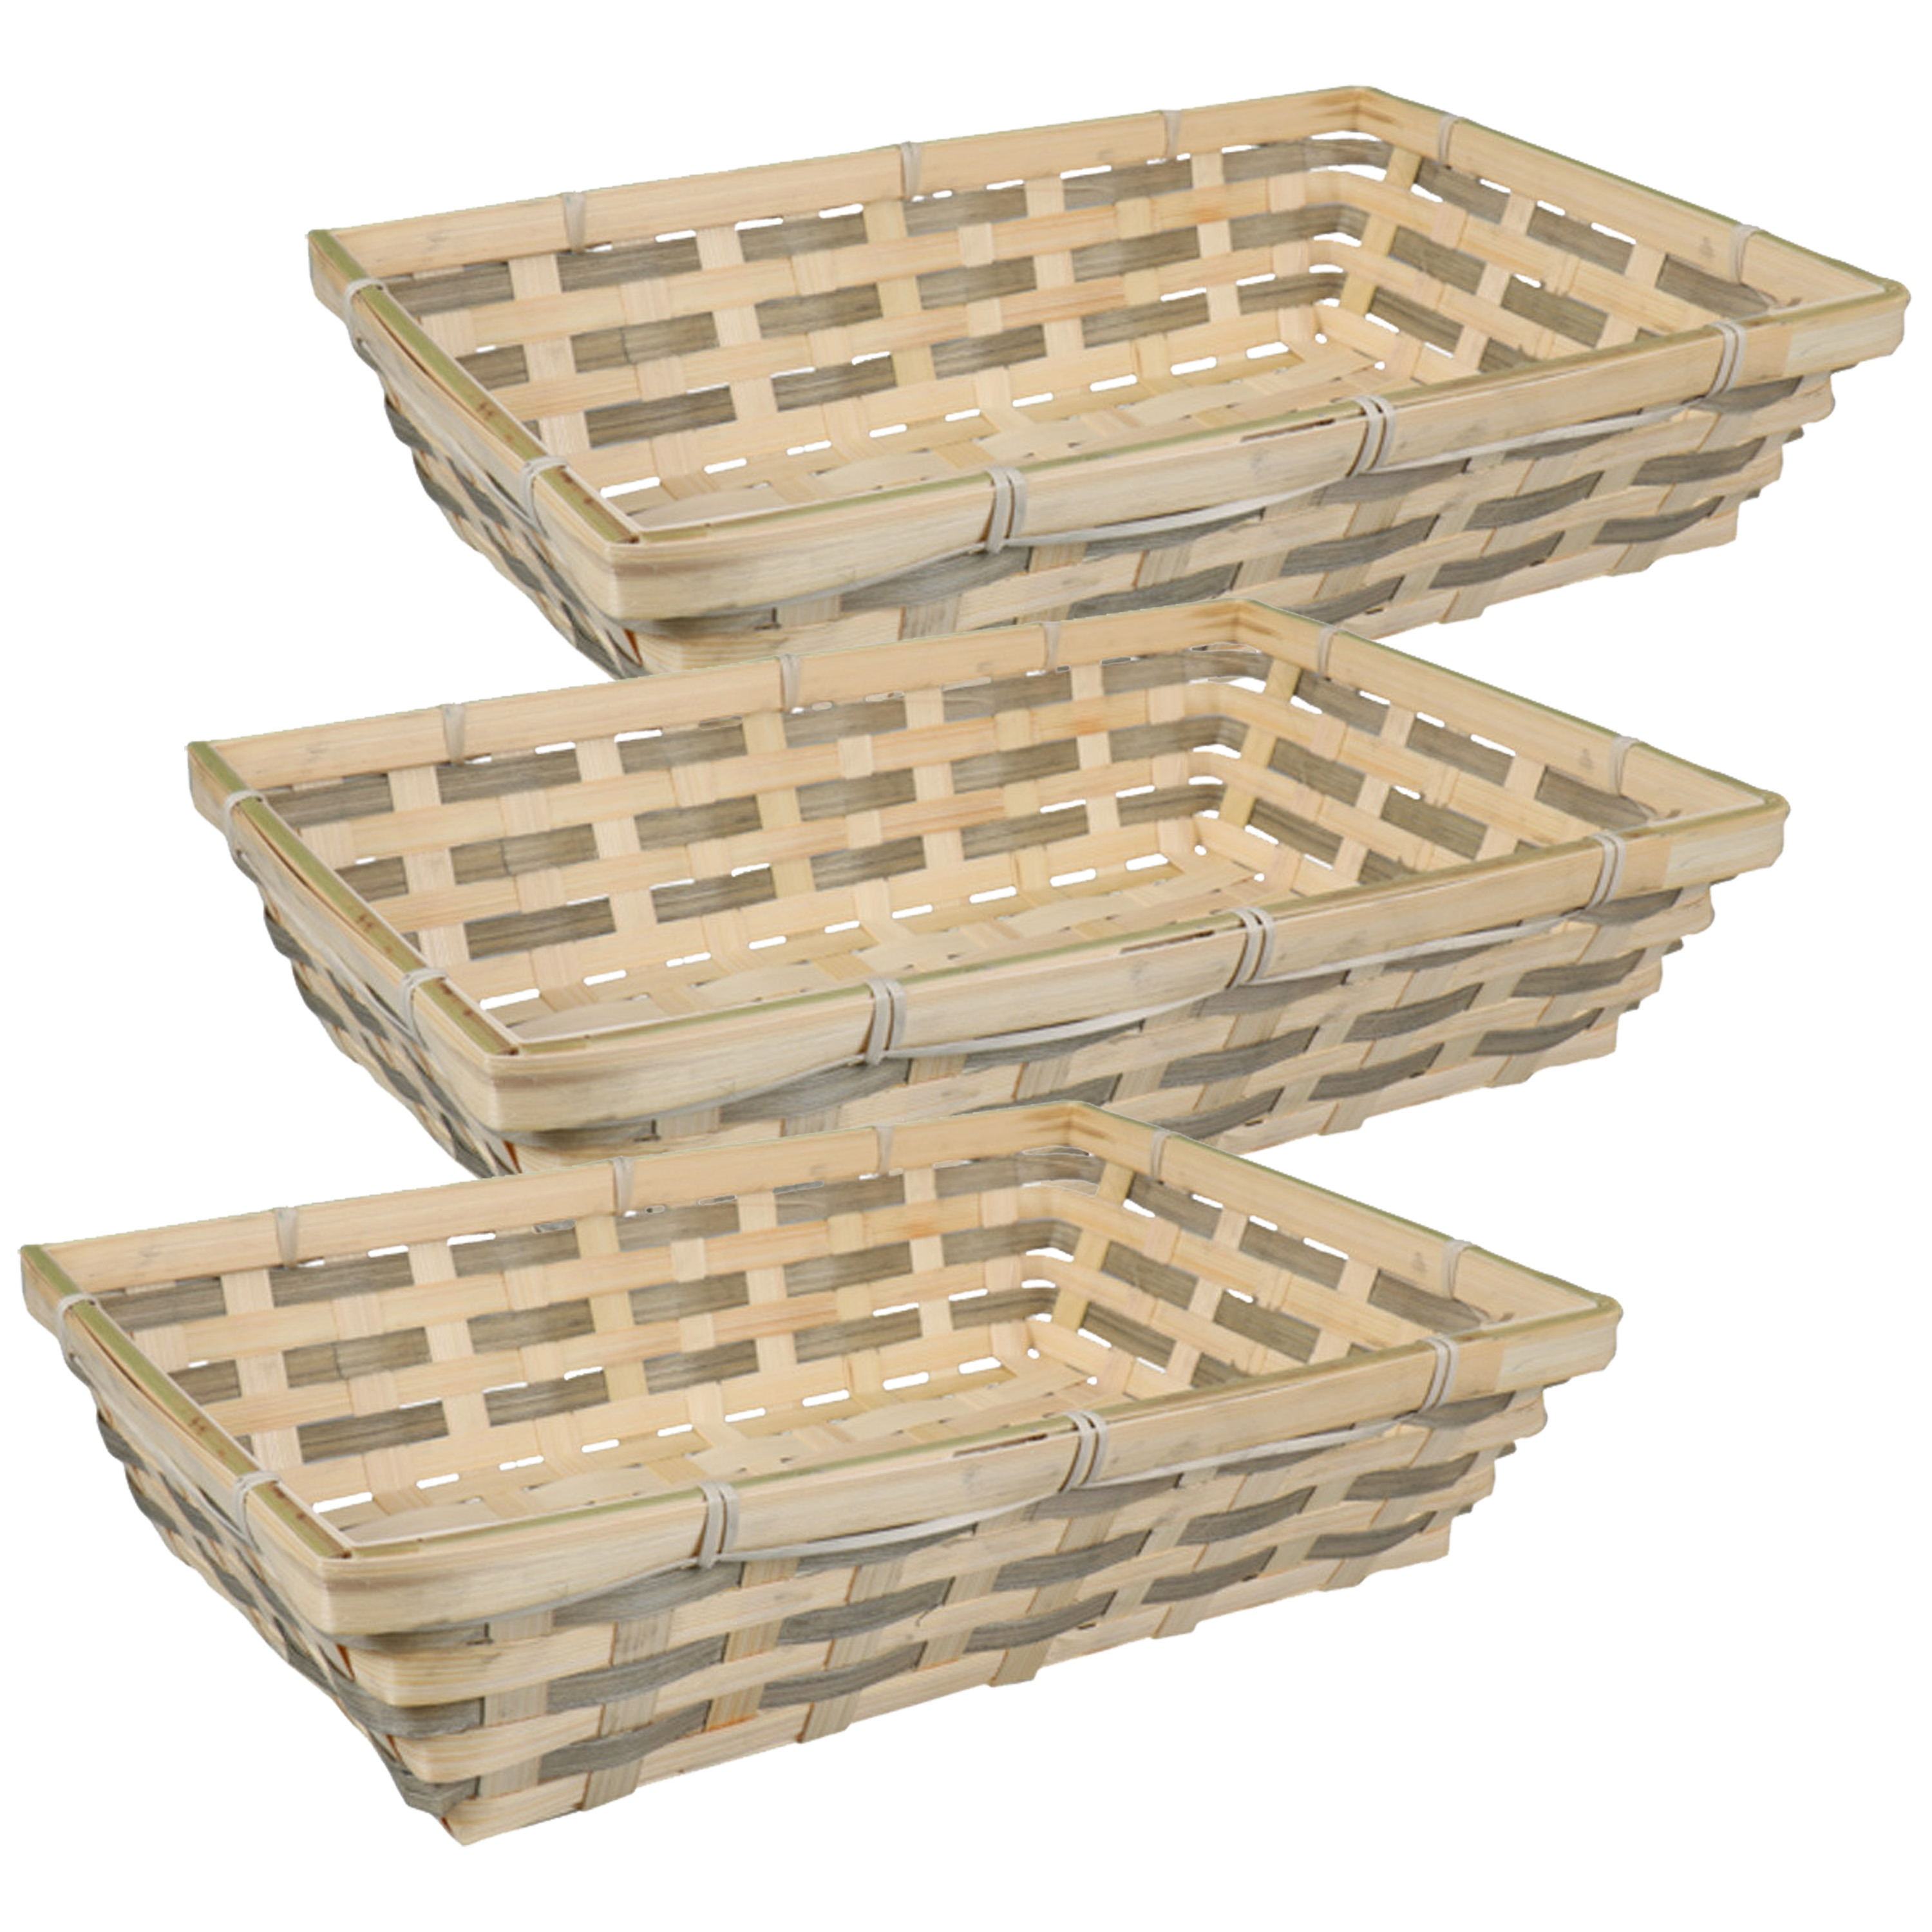 Broodmand rechthoekig - 3x - gevlochten bamboe hout - 34 x 24 x 8 cm - naturel/grijs